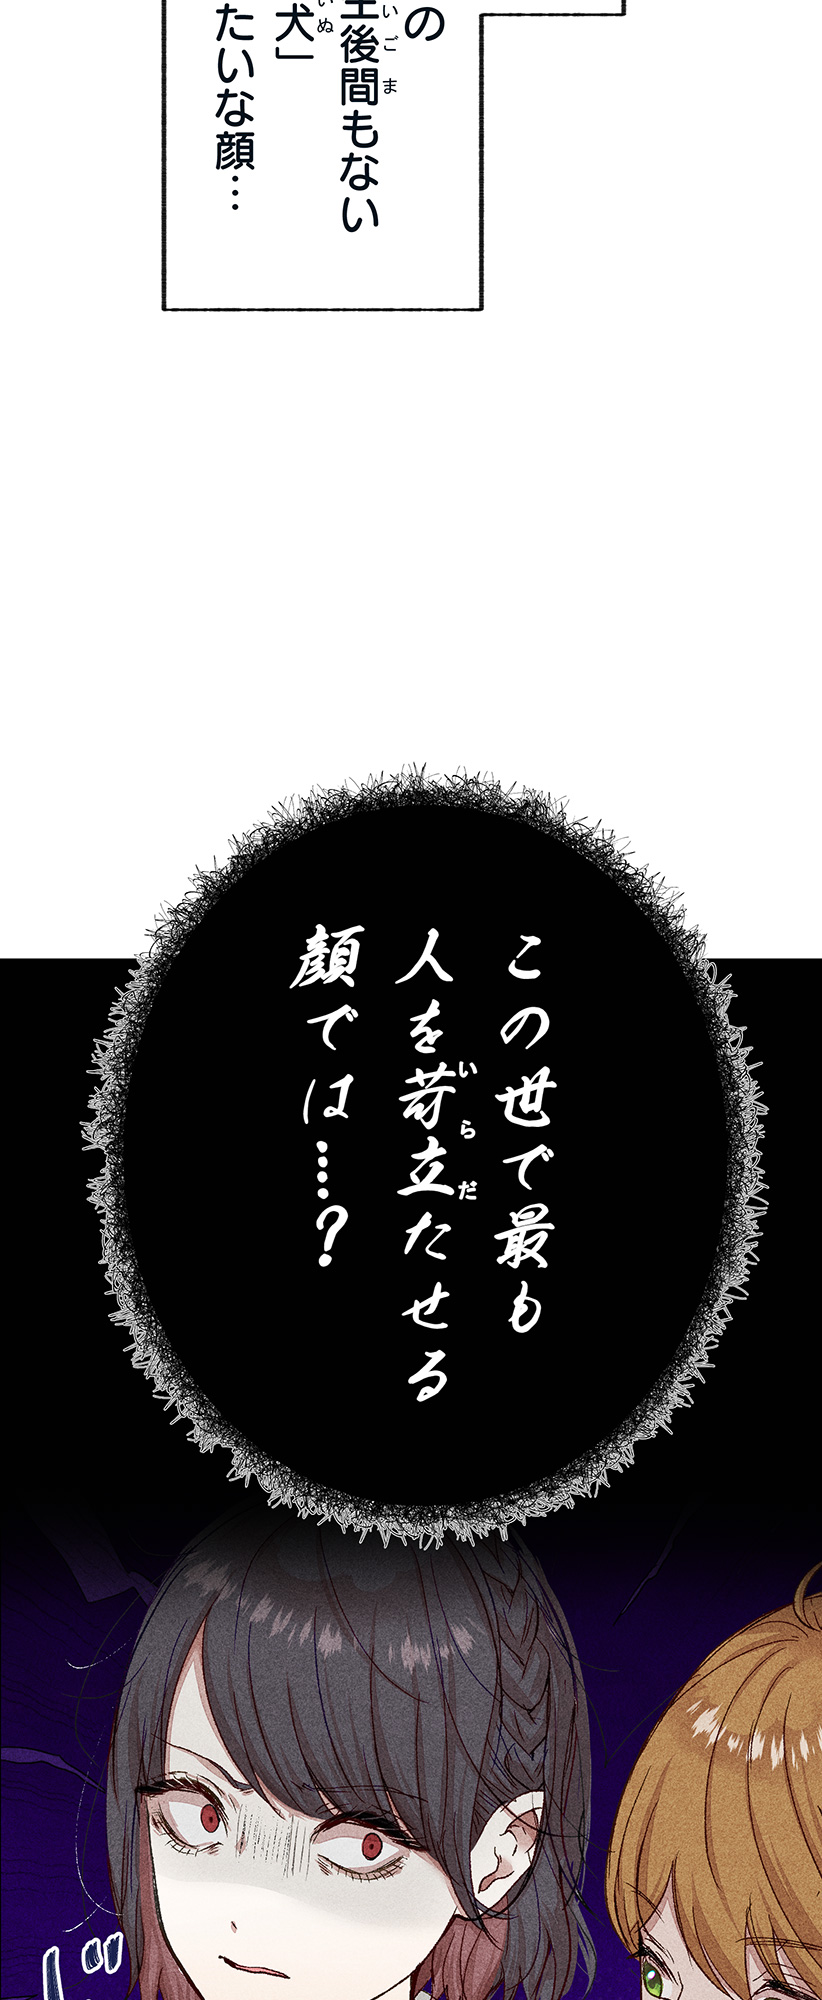 Nanten-san wa Minoranai - Chapter 3 - Page 27